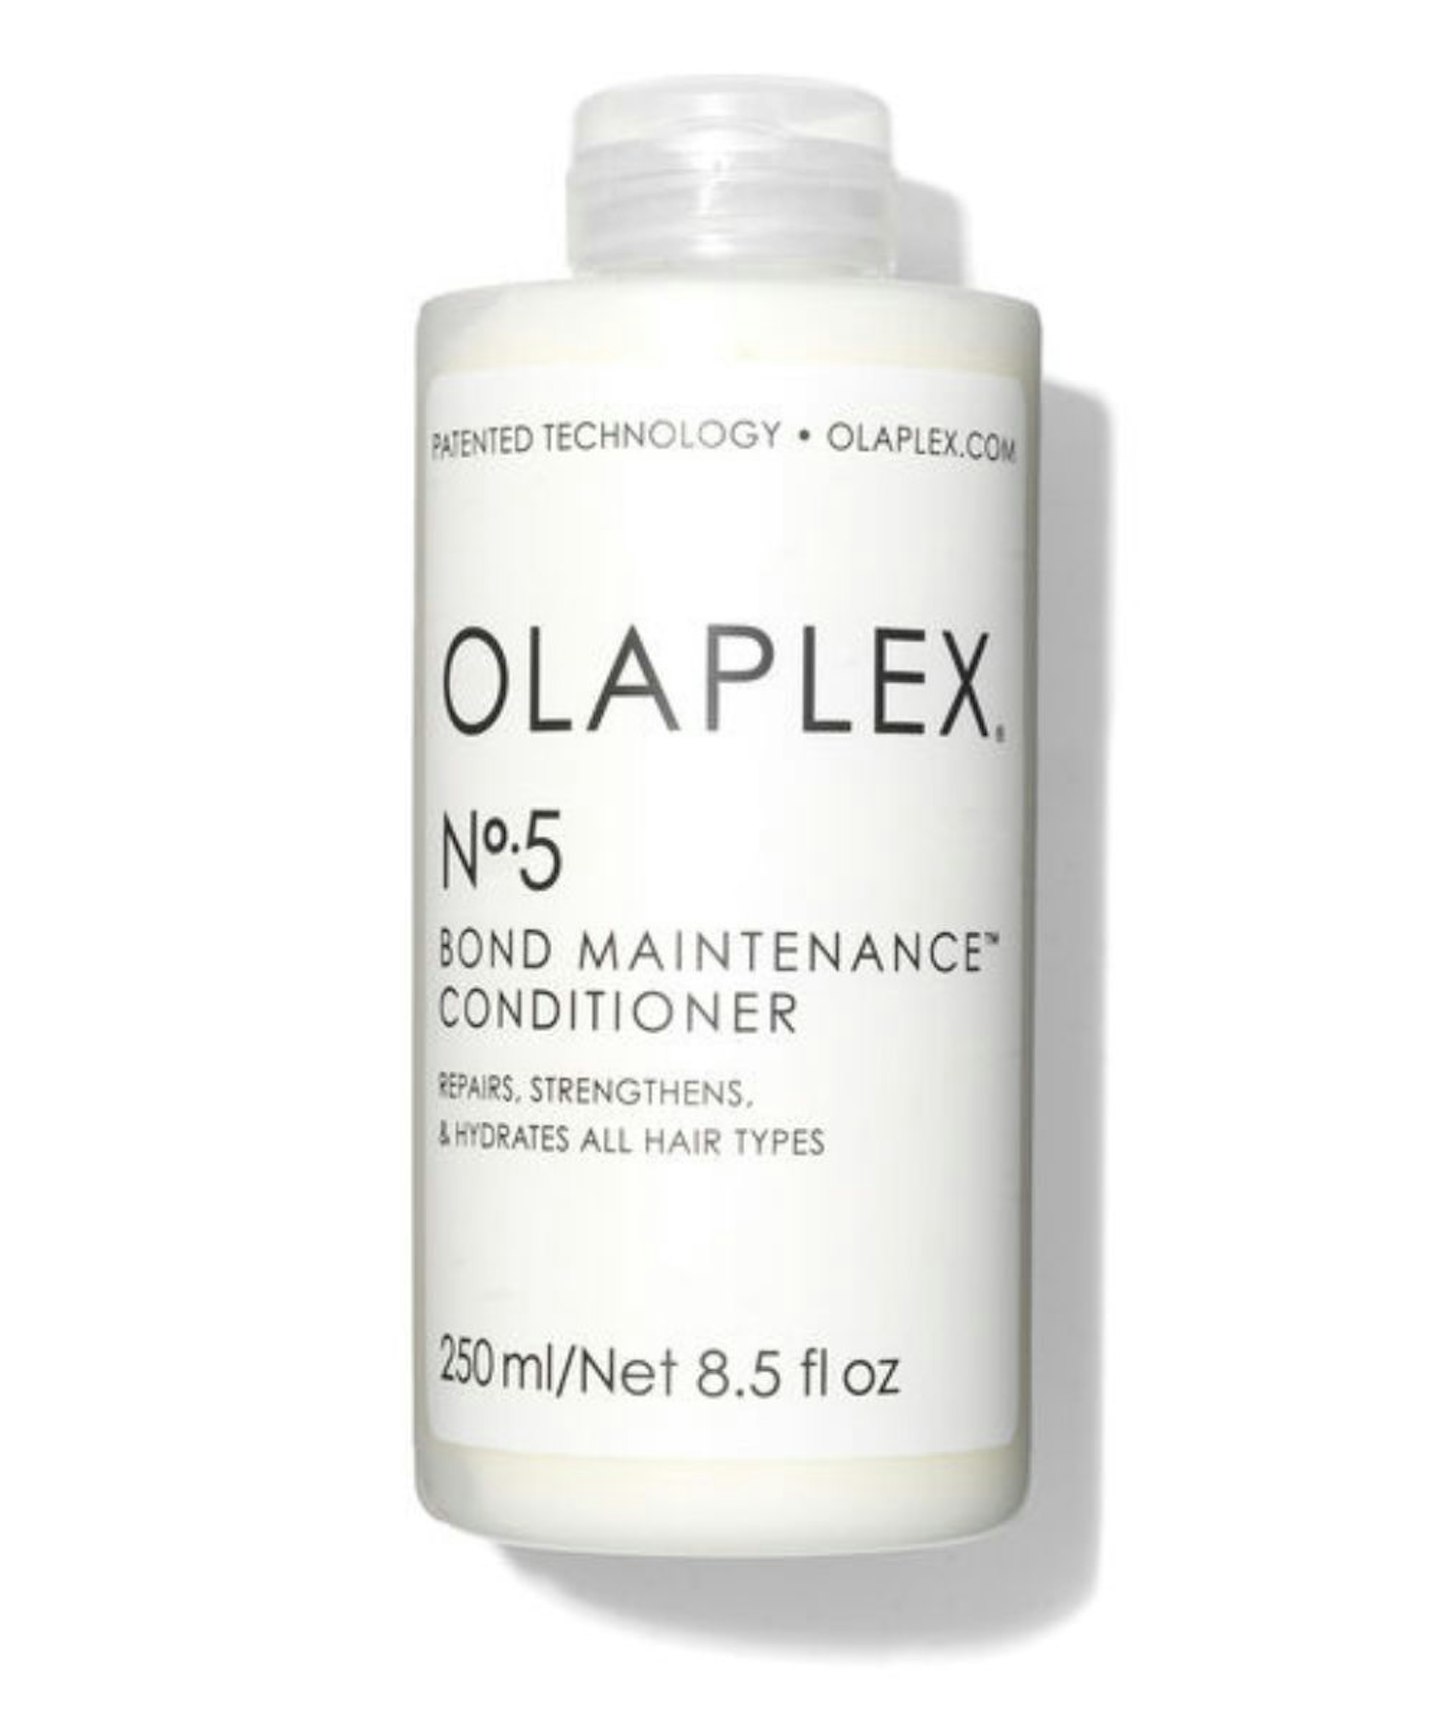 Olaplex No. 5 Maintenance Conditioner